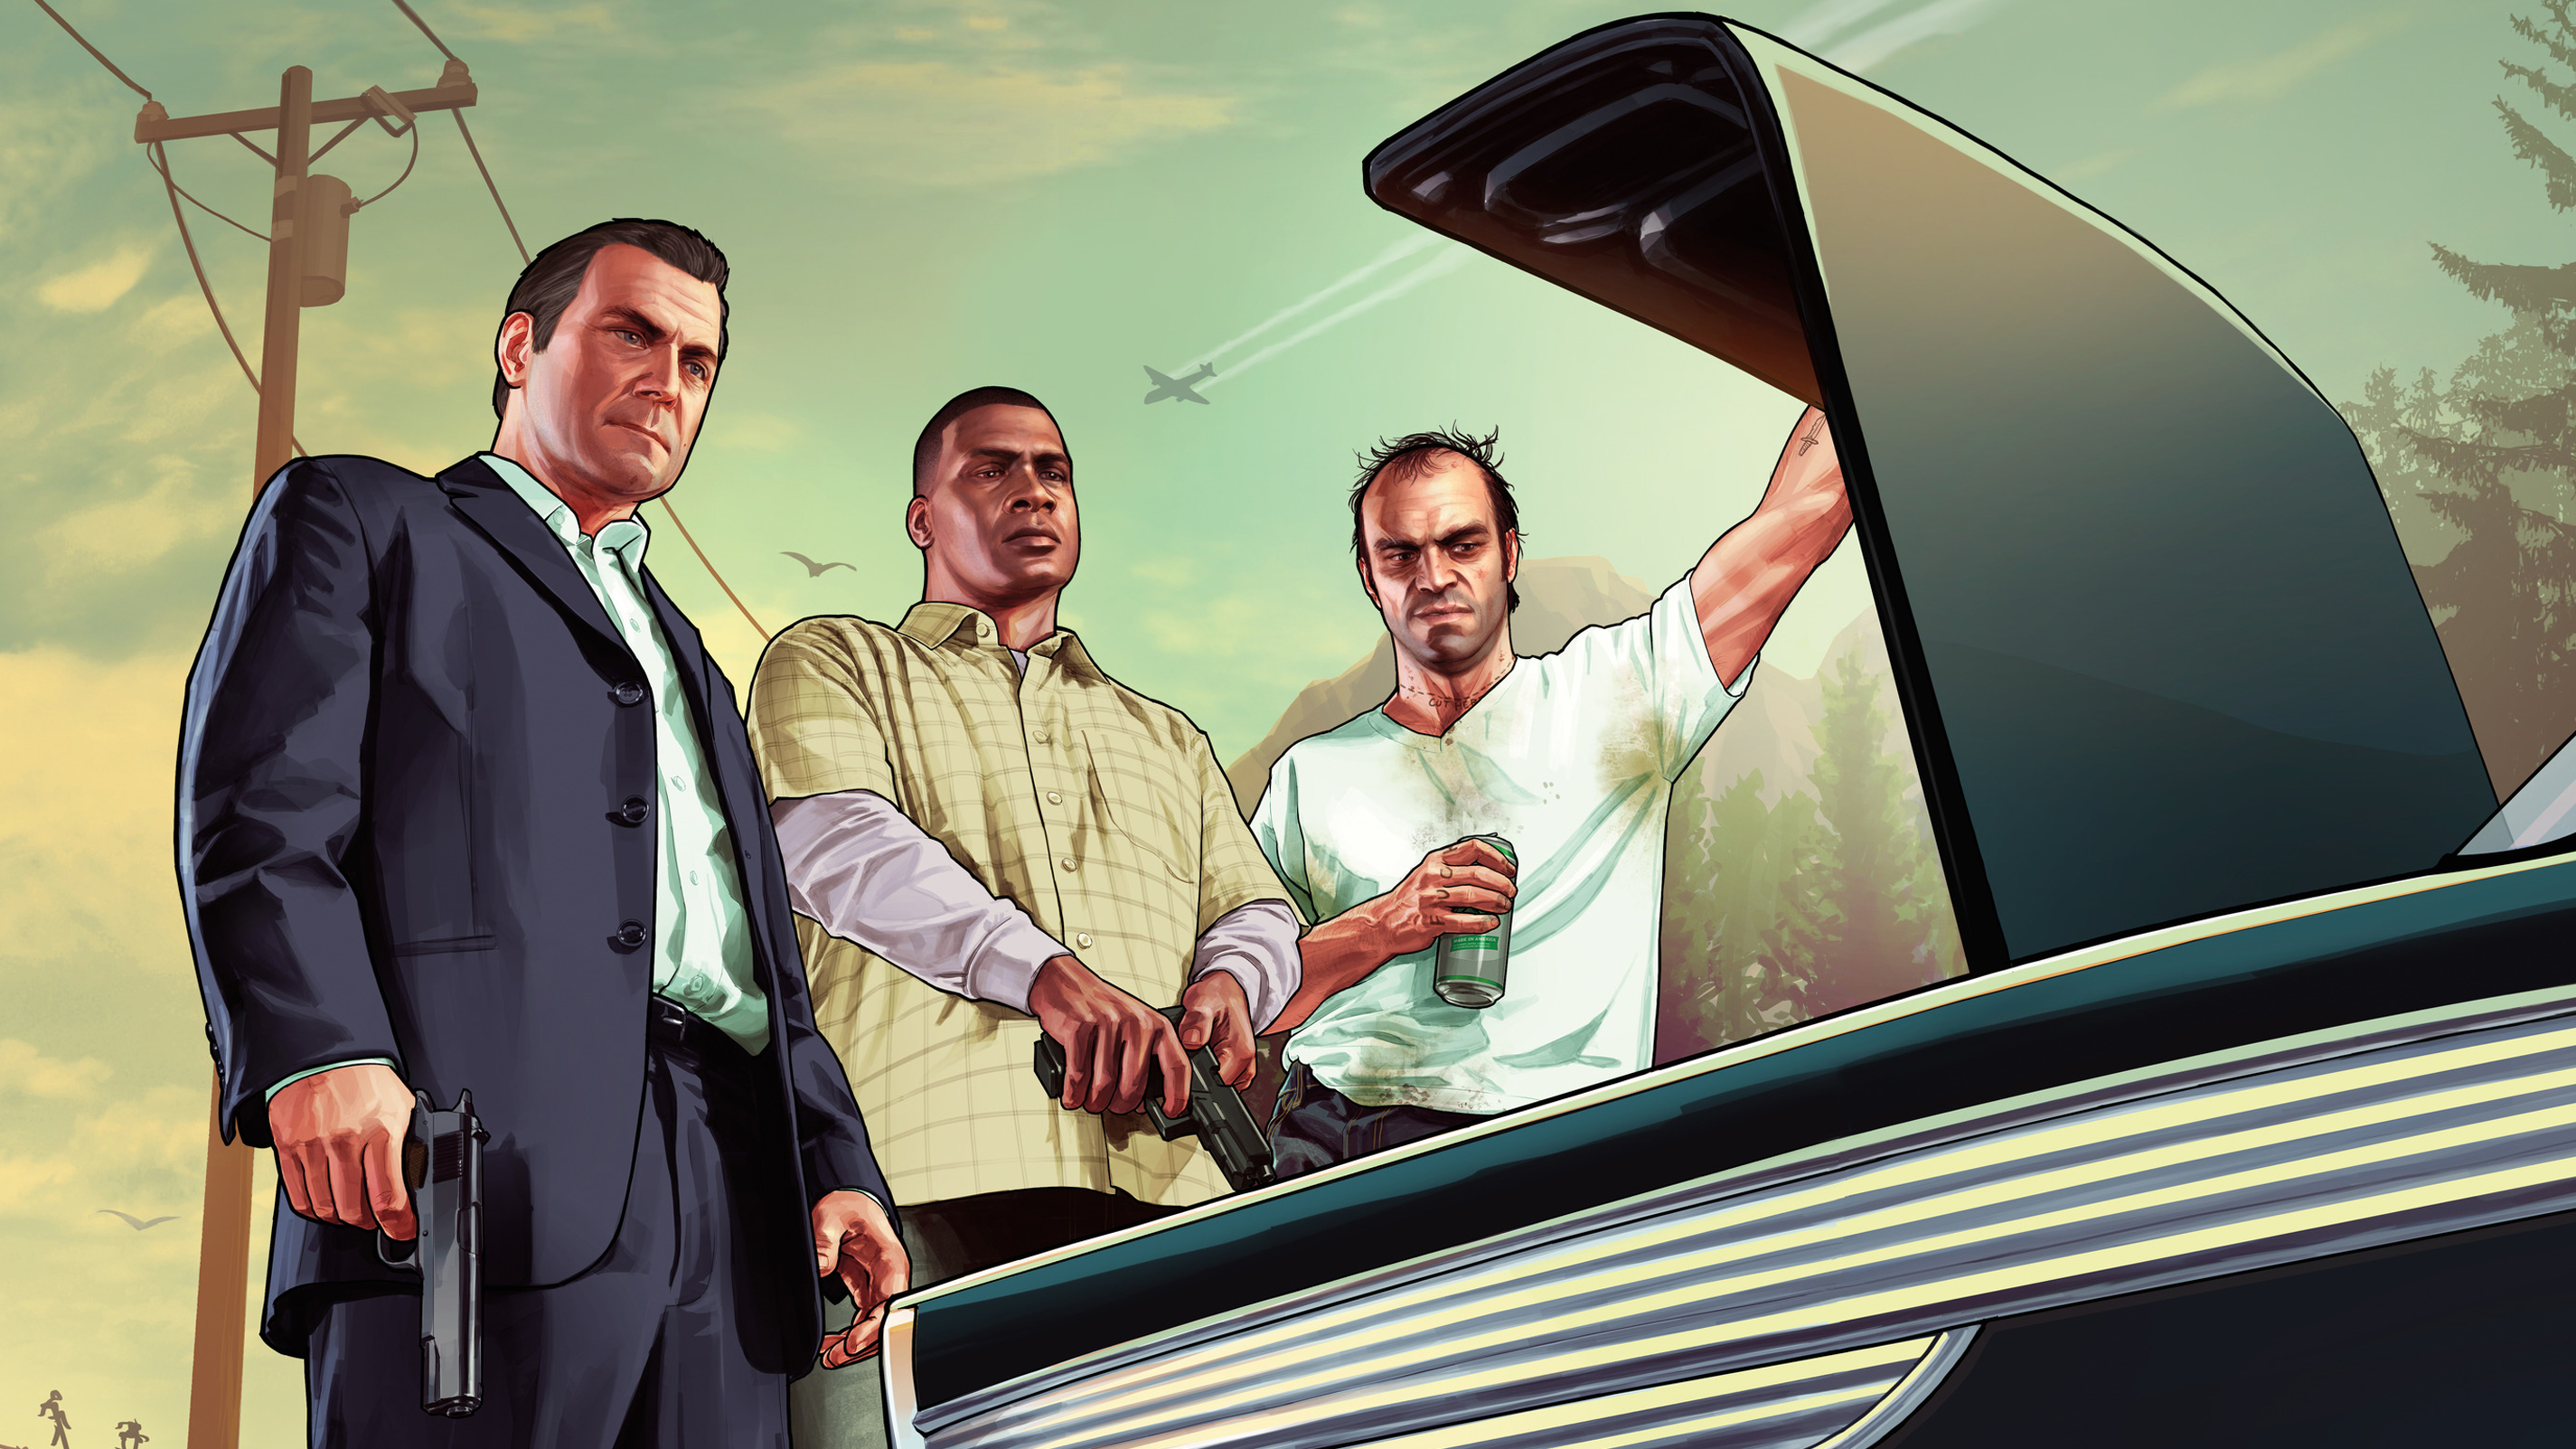 Arte clave de personajes de GTA 5 de Michael, Franklin y Trevor mirando en el maletero de un coche.